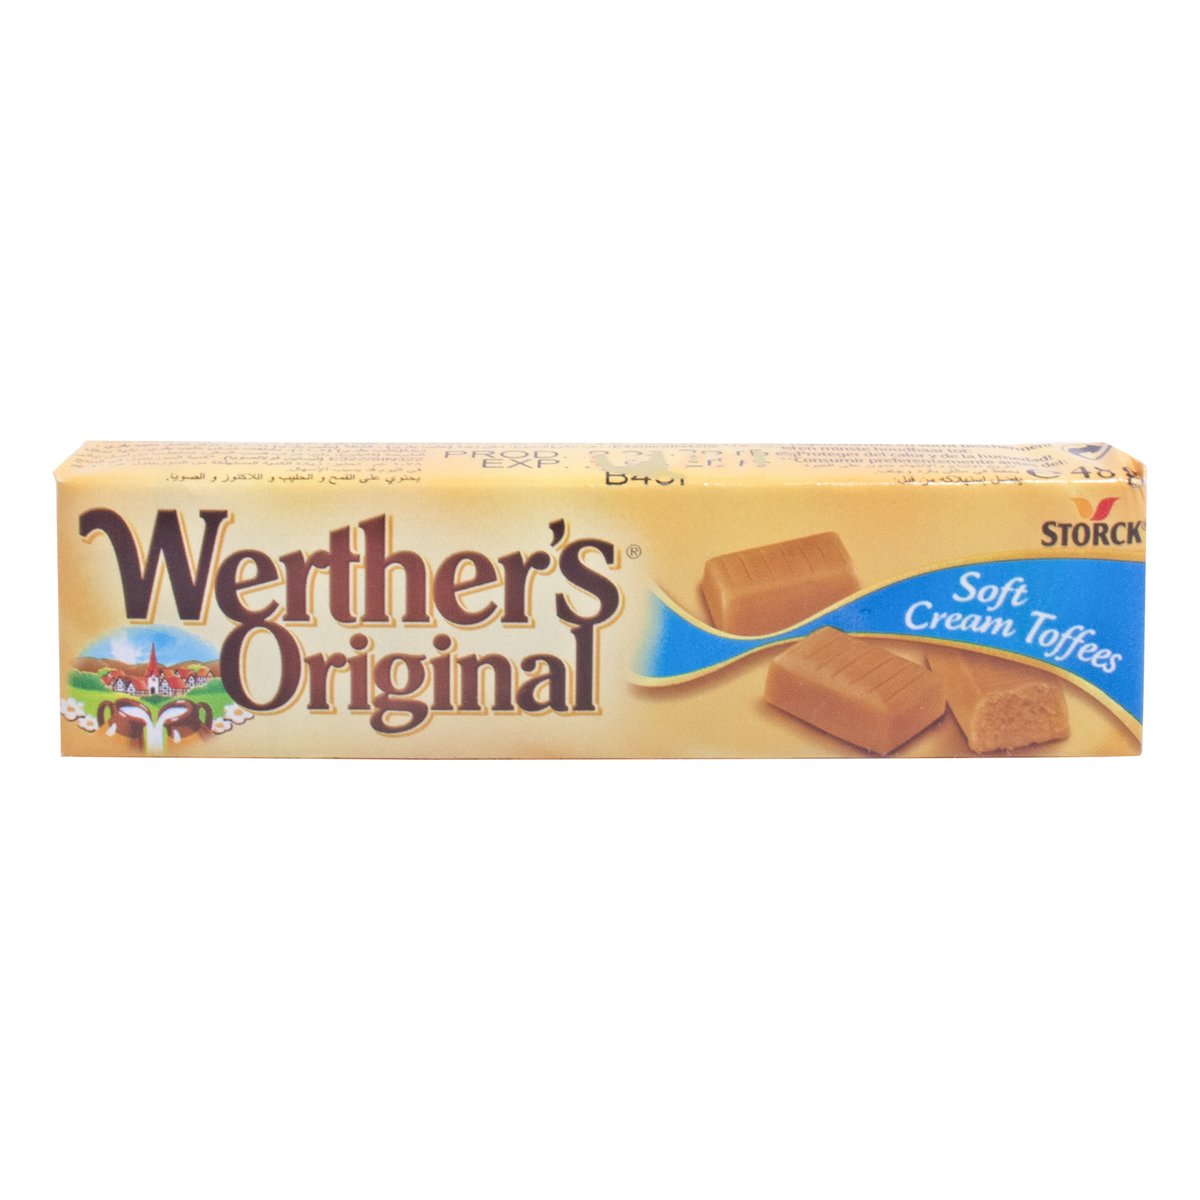 Storck Werther's Original Soft Cream Toffees 48 g